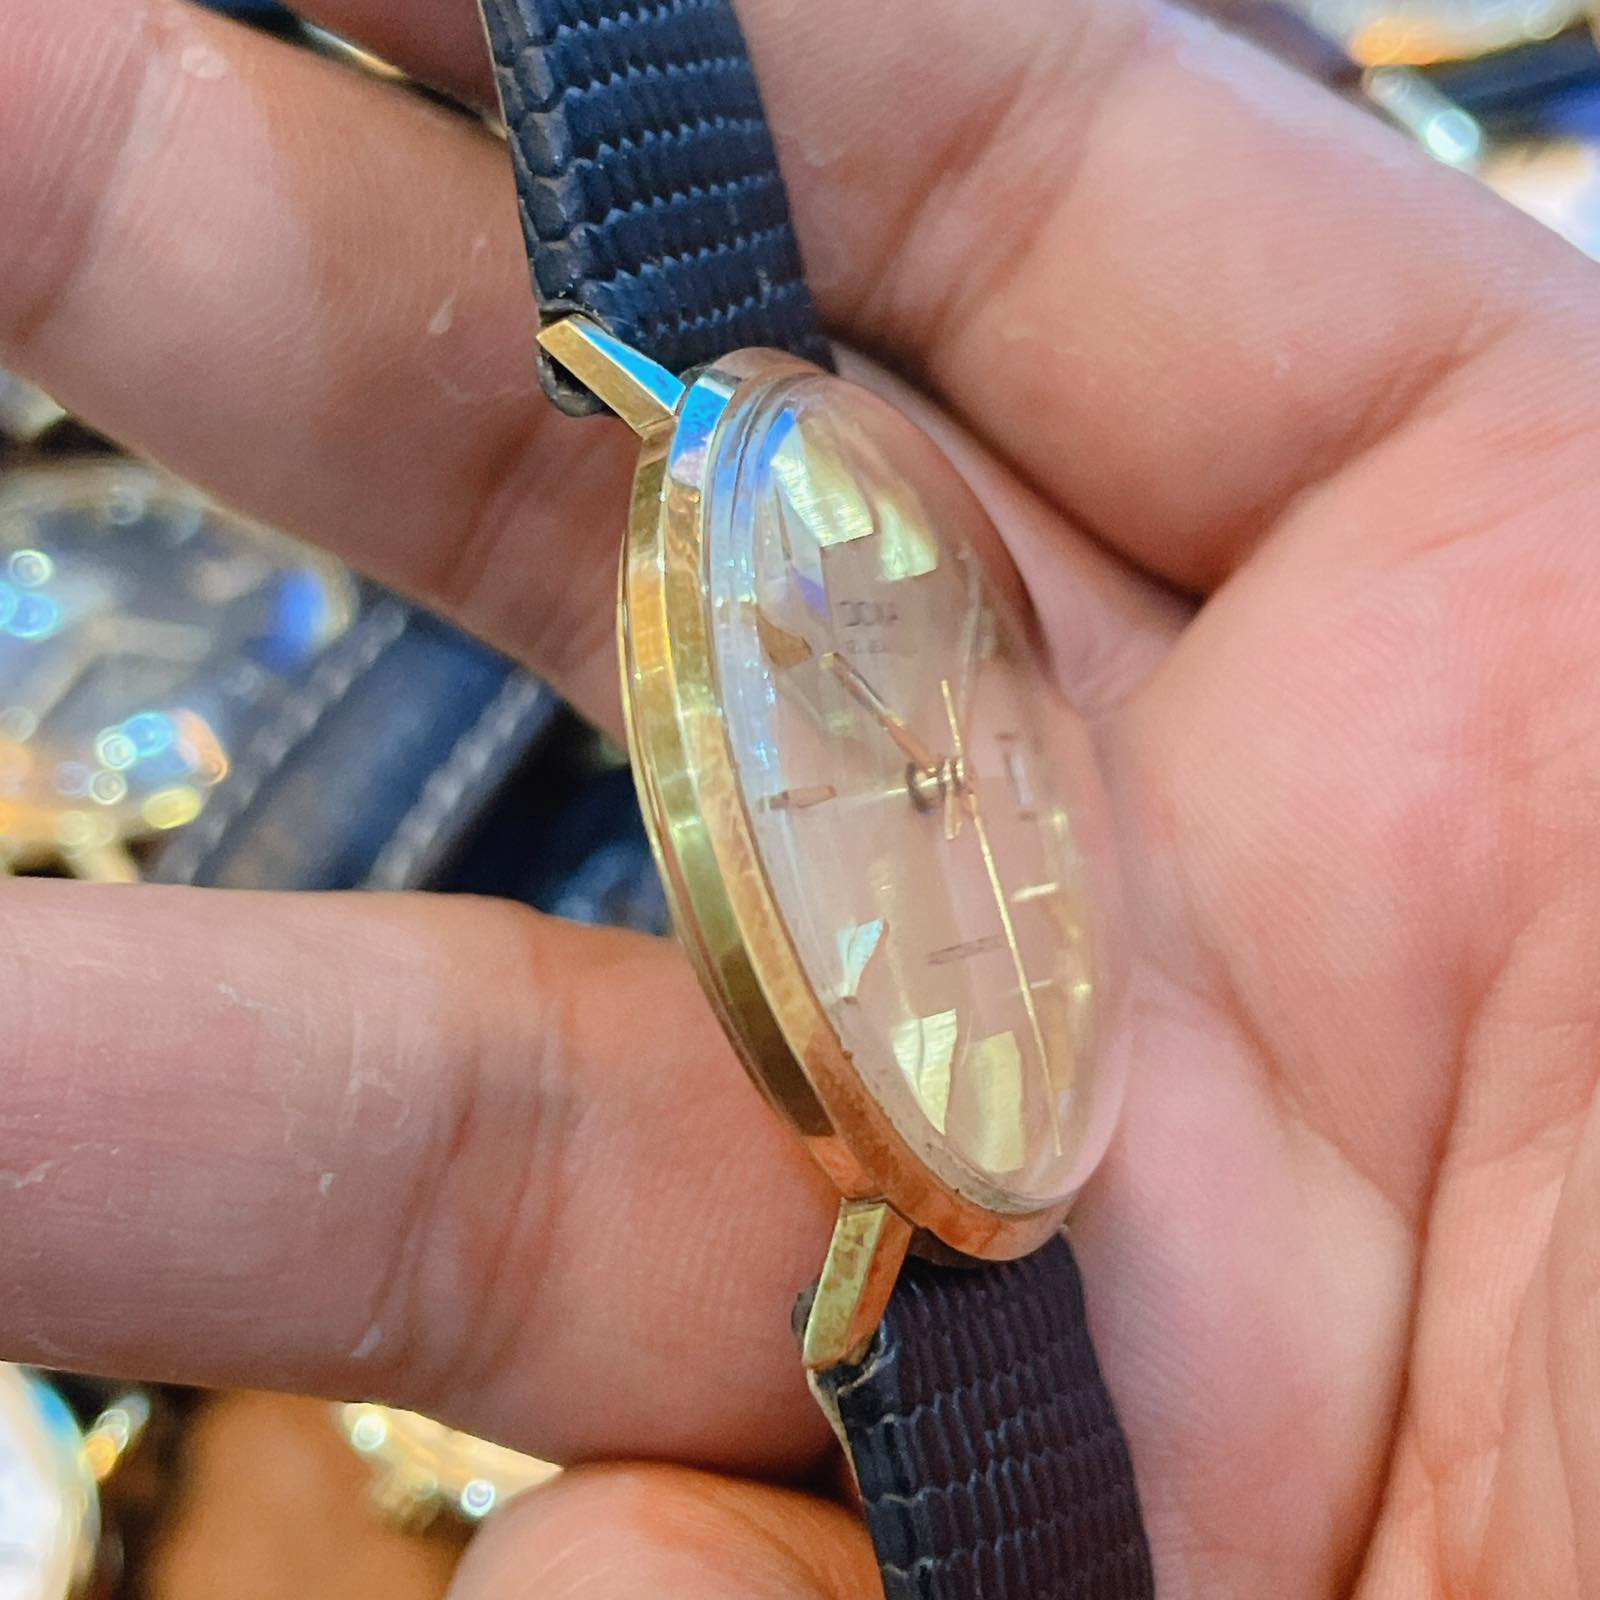 Đồng hồ cổ DOXA Automatic vàng đúc 18k chính hãng thụy Sĩ